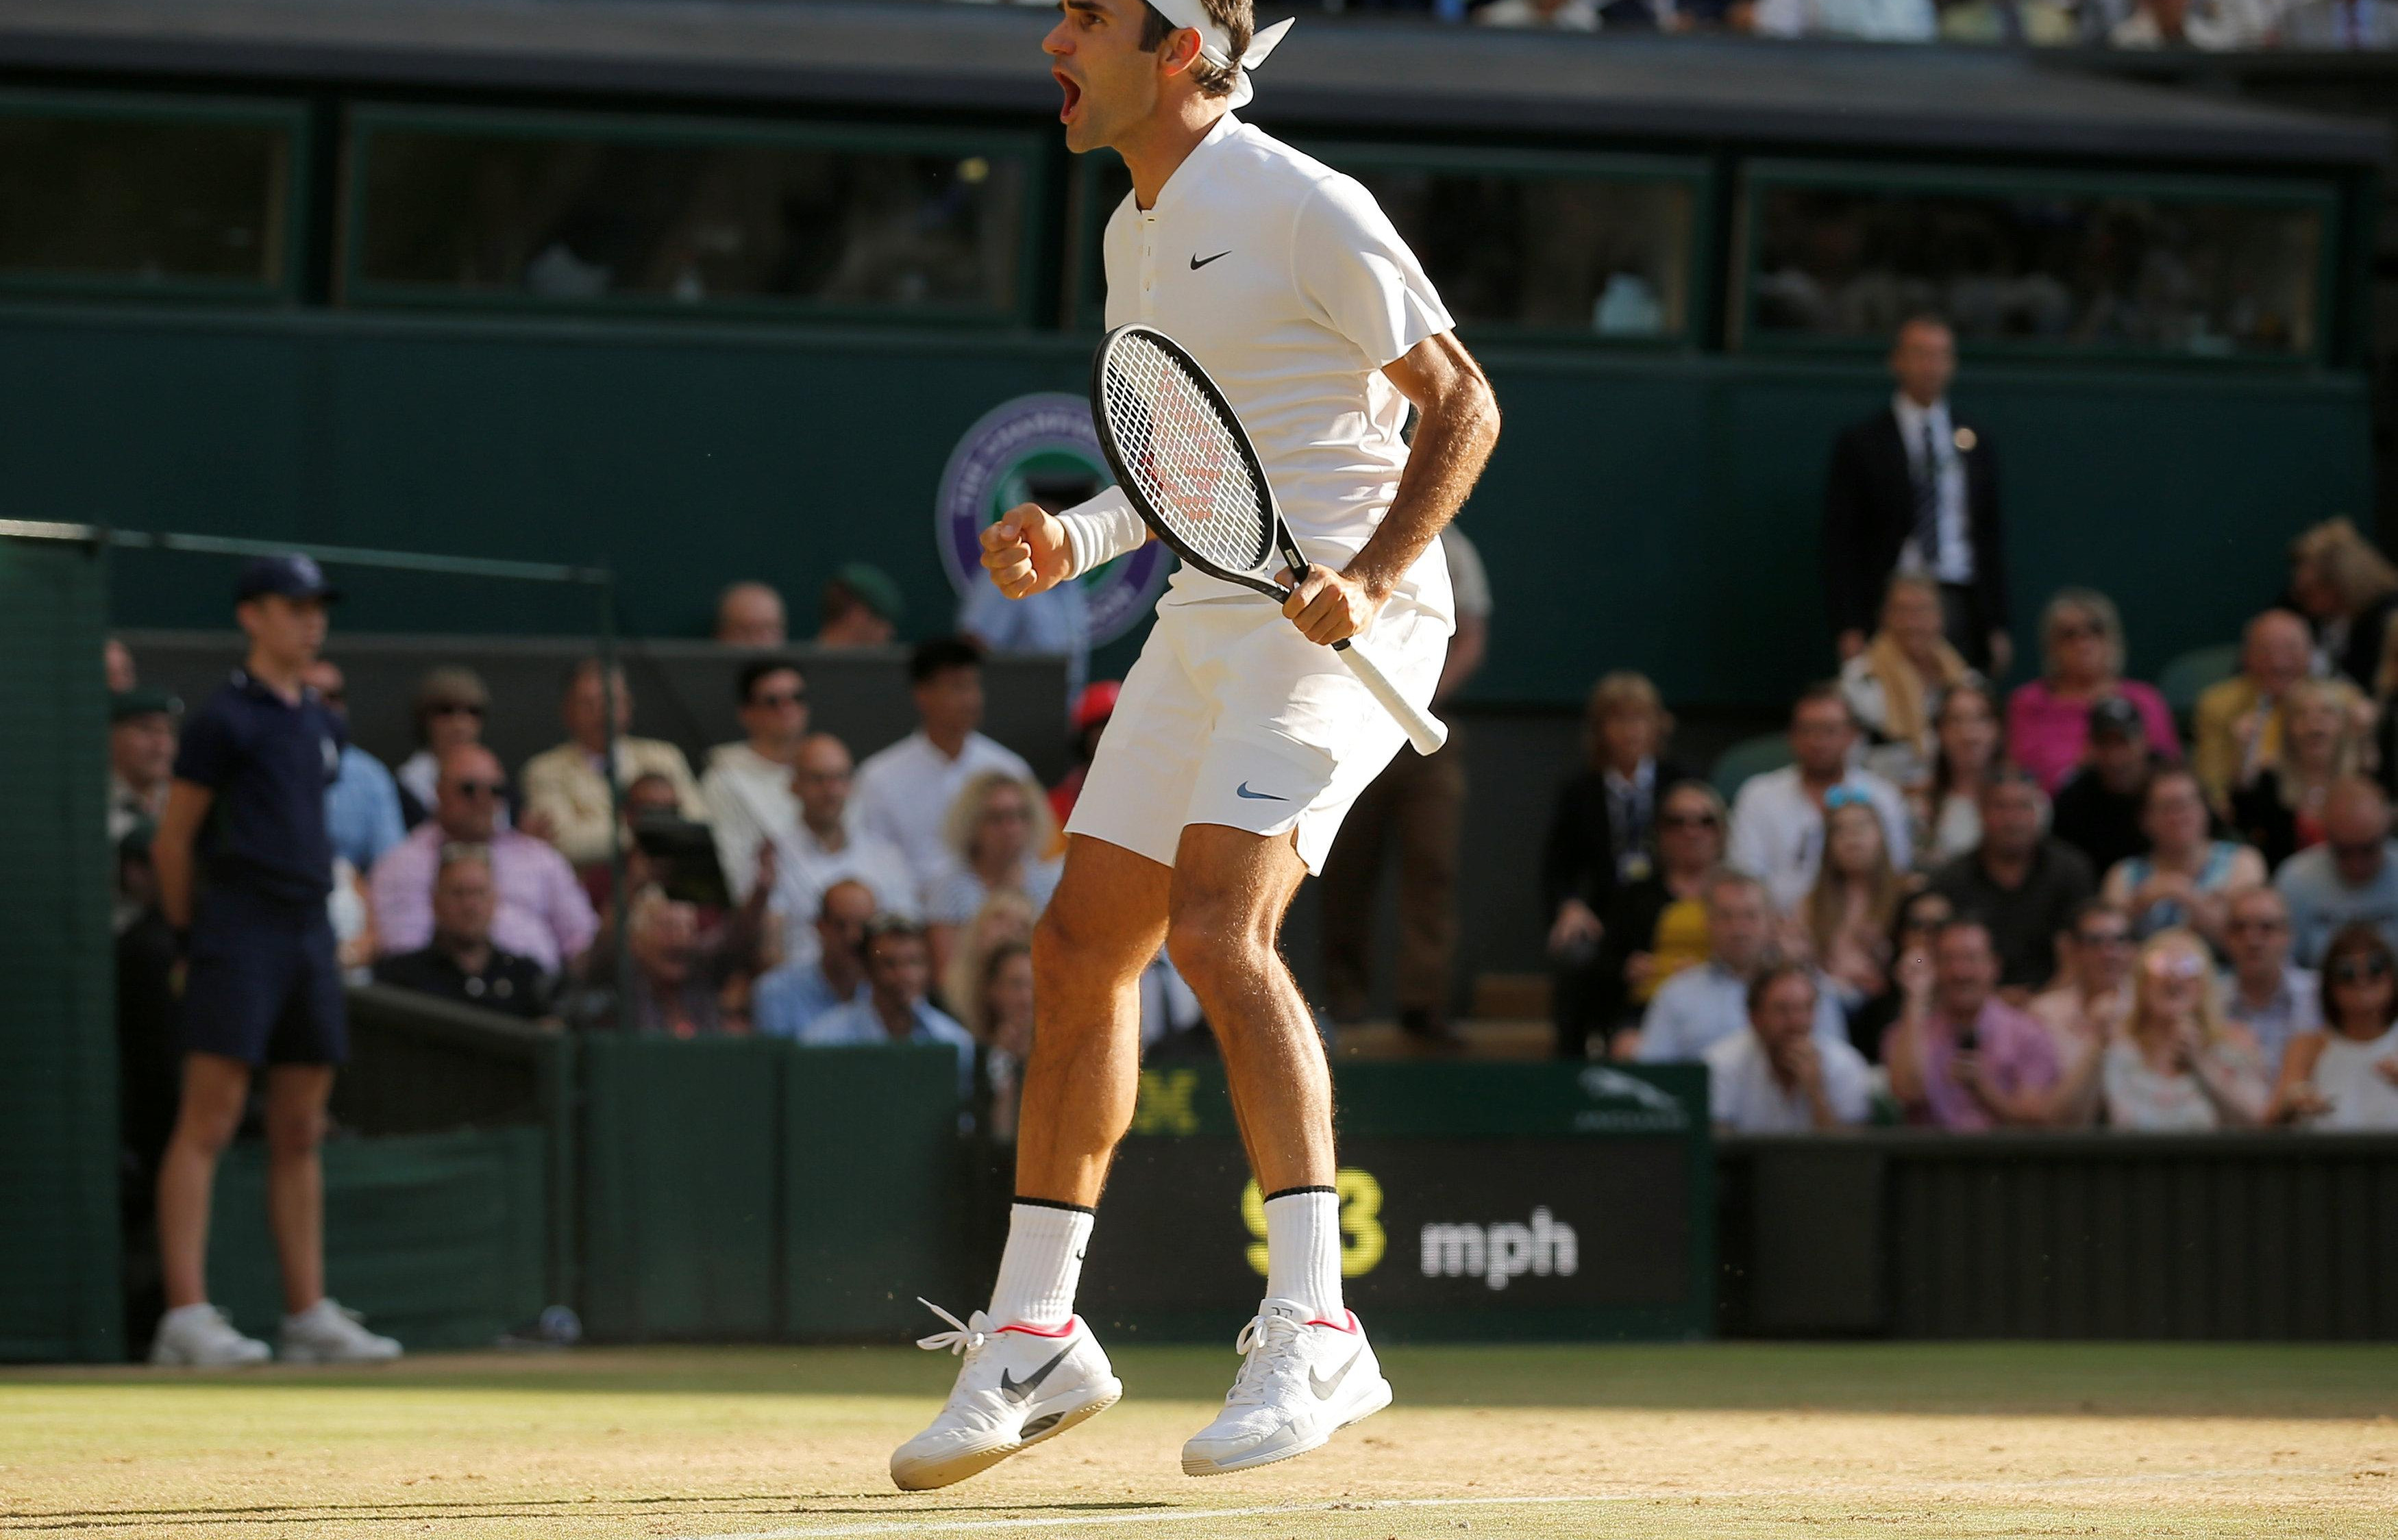 KONAČNO DA NEKO KAŽE ISTINU! Toni Nadal: Federer nije baš disciplinovan i poslušan!